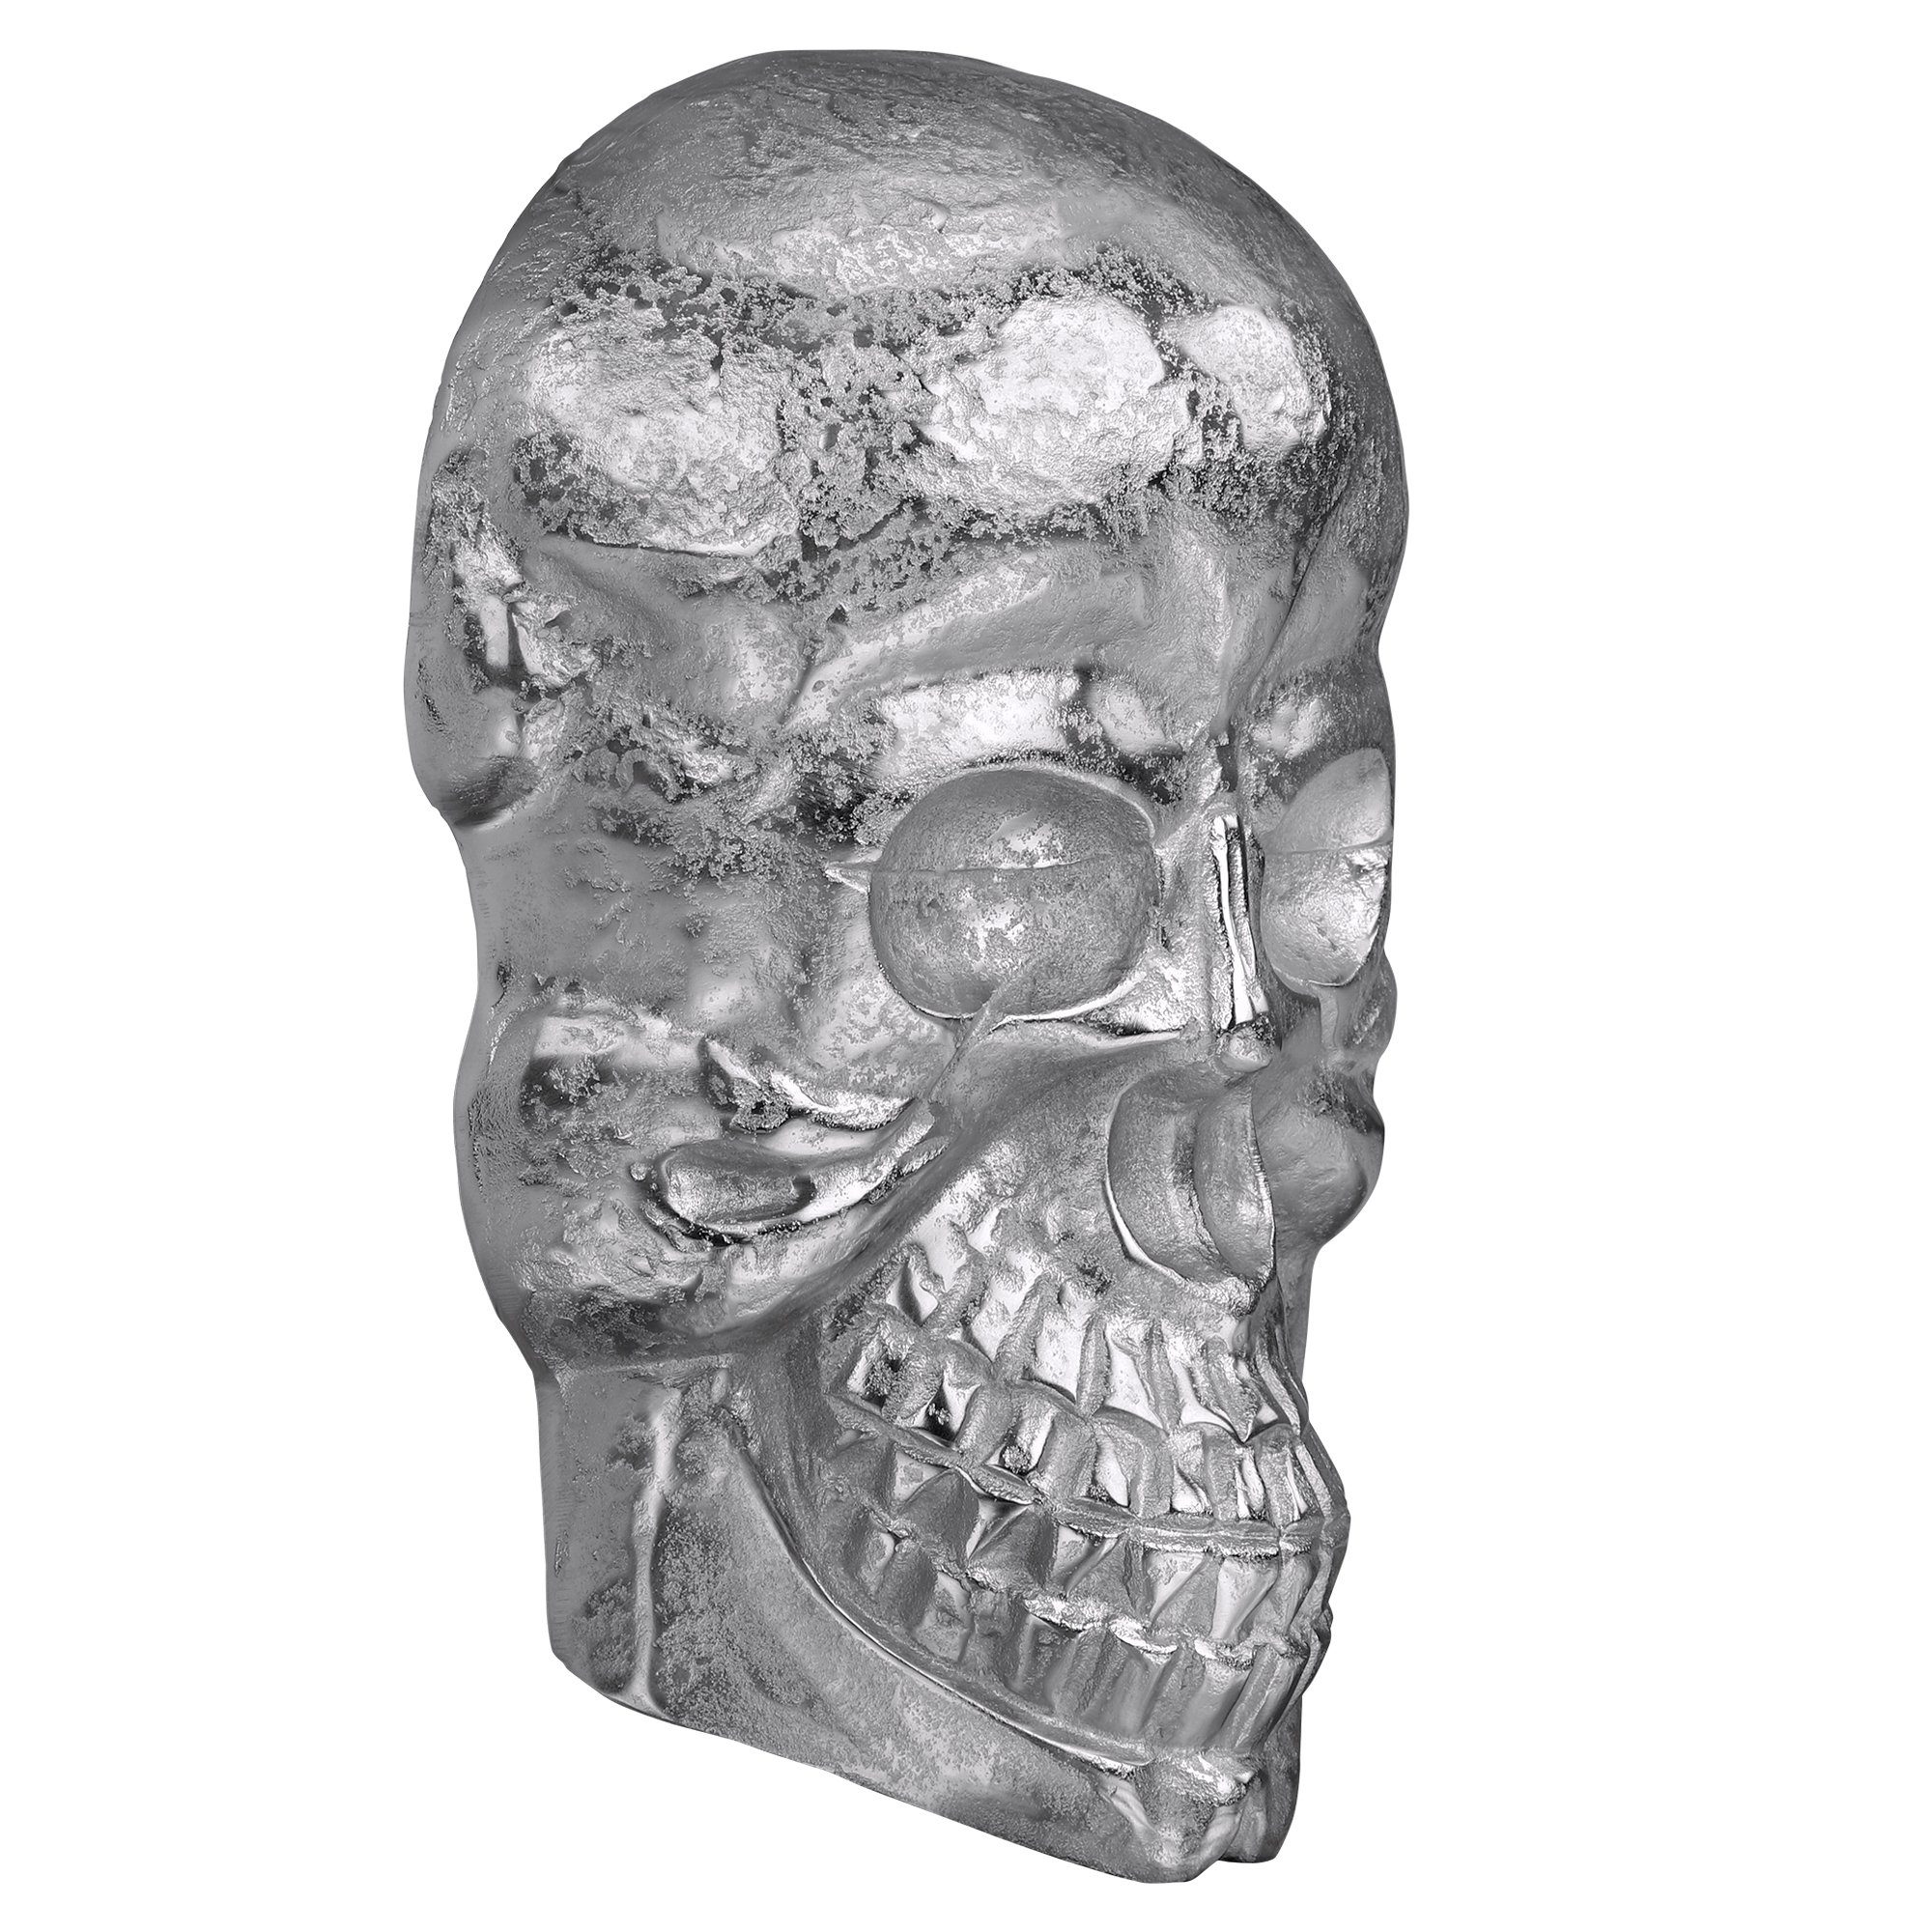 Deko Skull kein Poliertes Set, Gothic Totenschädel (kein Silber WOMO-DESIGN Glänzend Nickel 42x30cm Totenkopf Set), Aluminium mit Schädel Finish Skulptur Wandskulptur